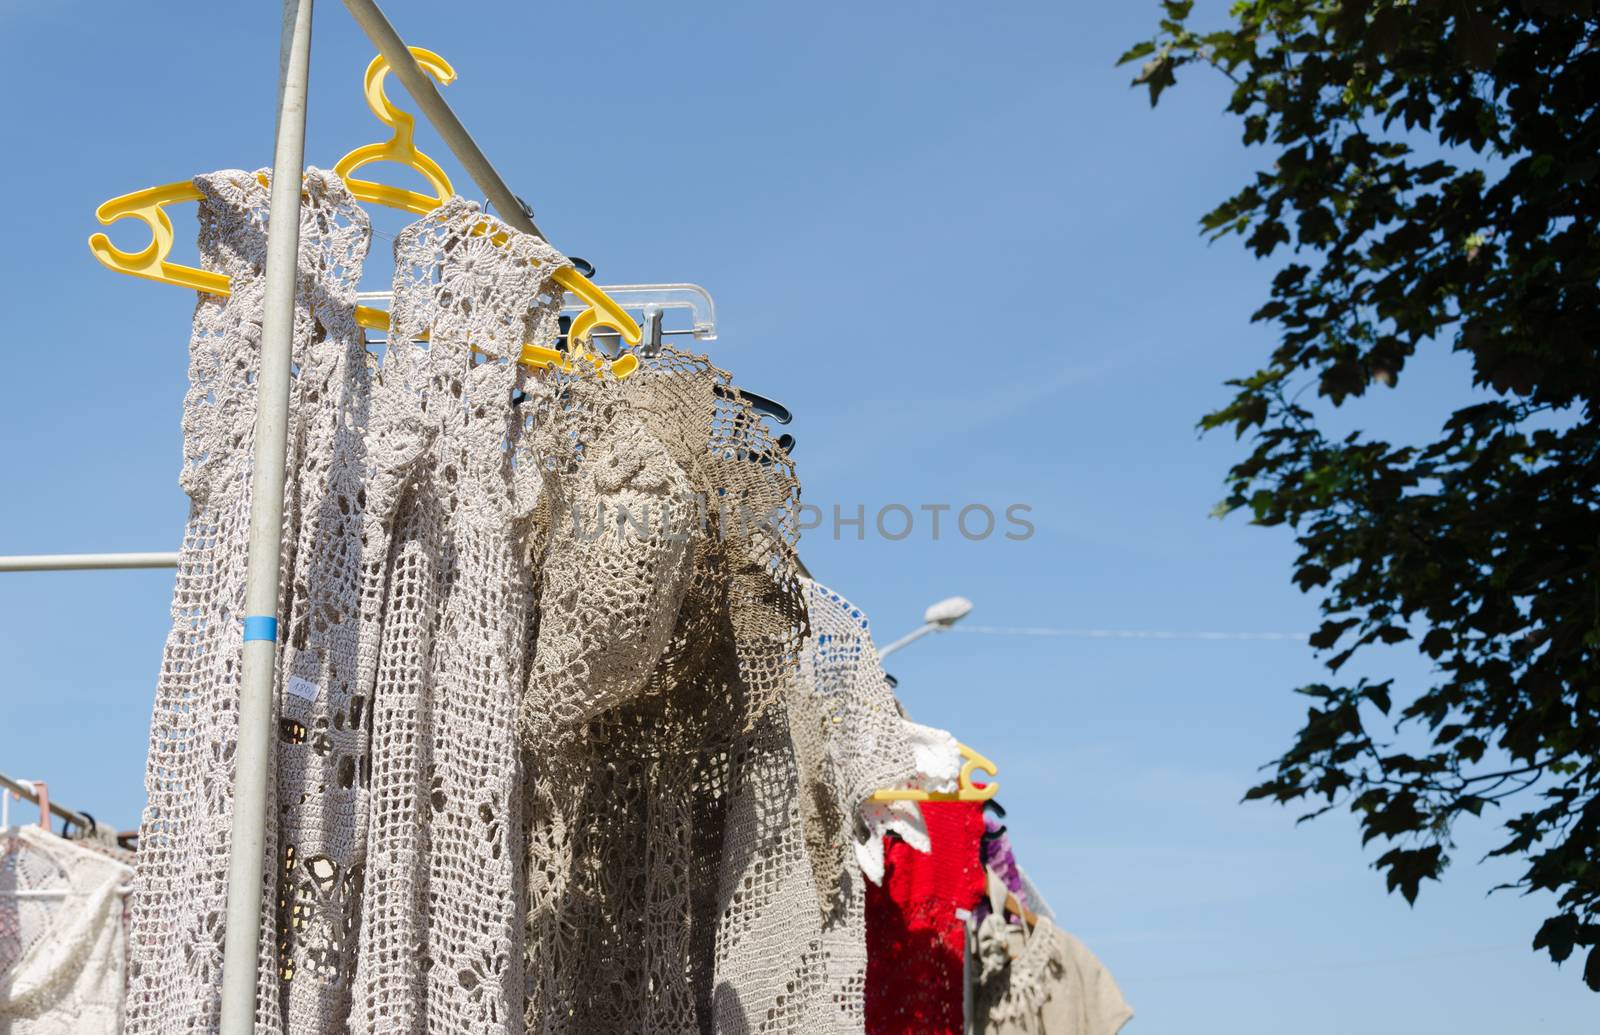 crocheted linen ladies blouses hang in fair by sauletas